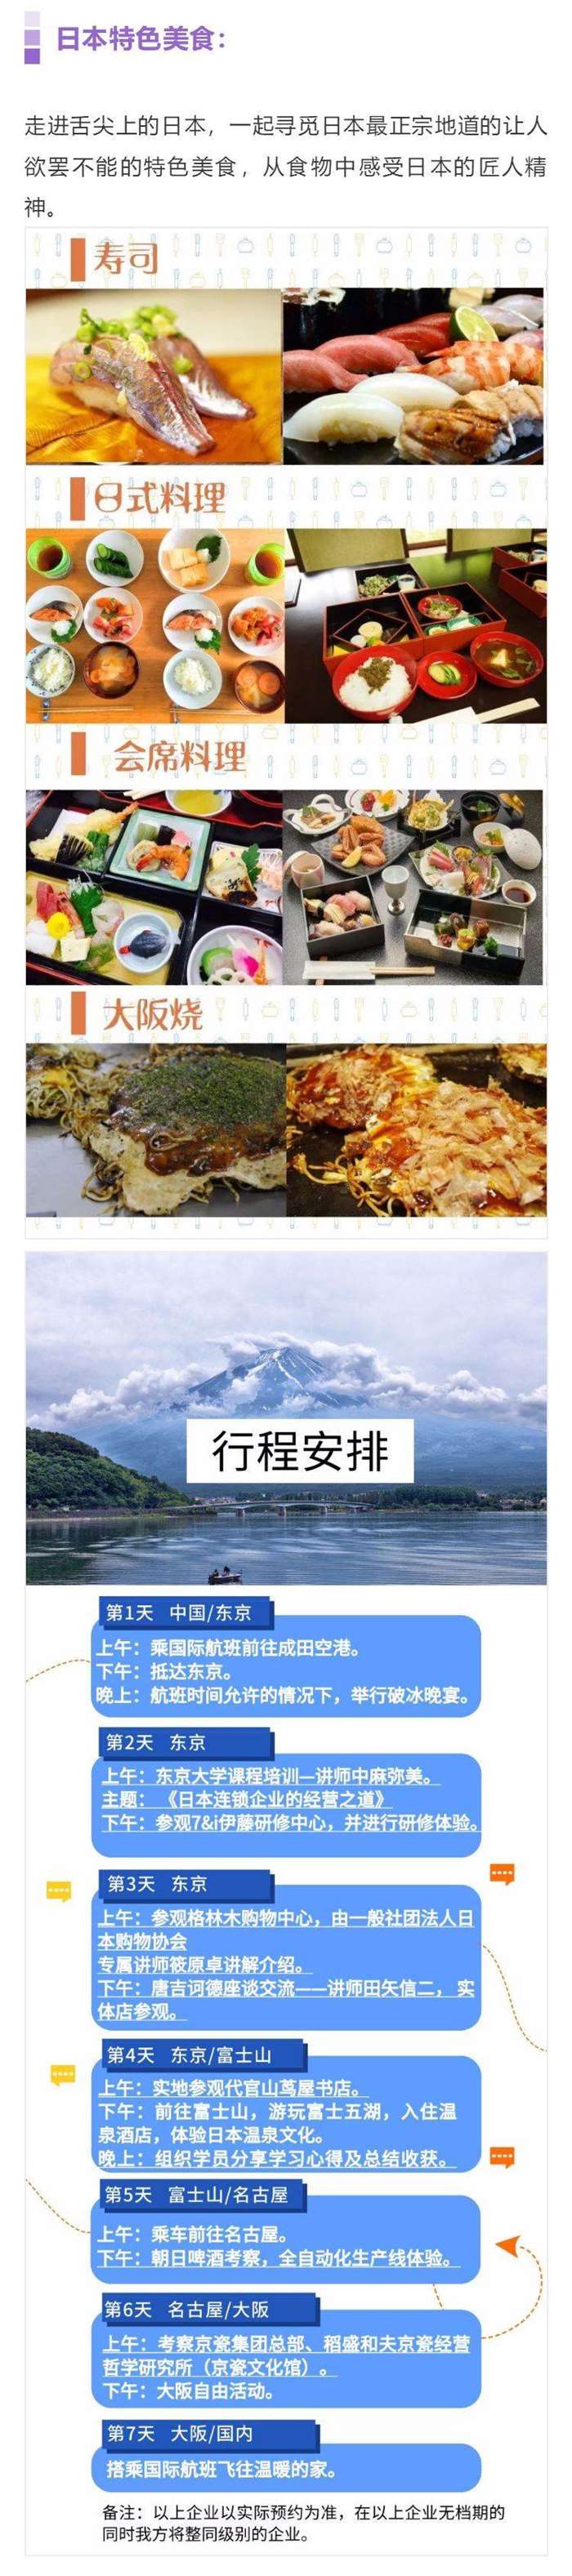 谦达四海新零售12月份宣传行程图片版本2活动行.png